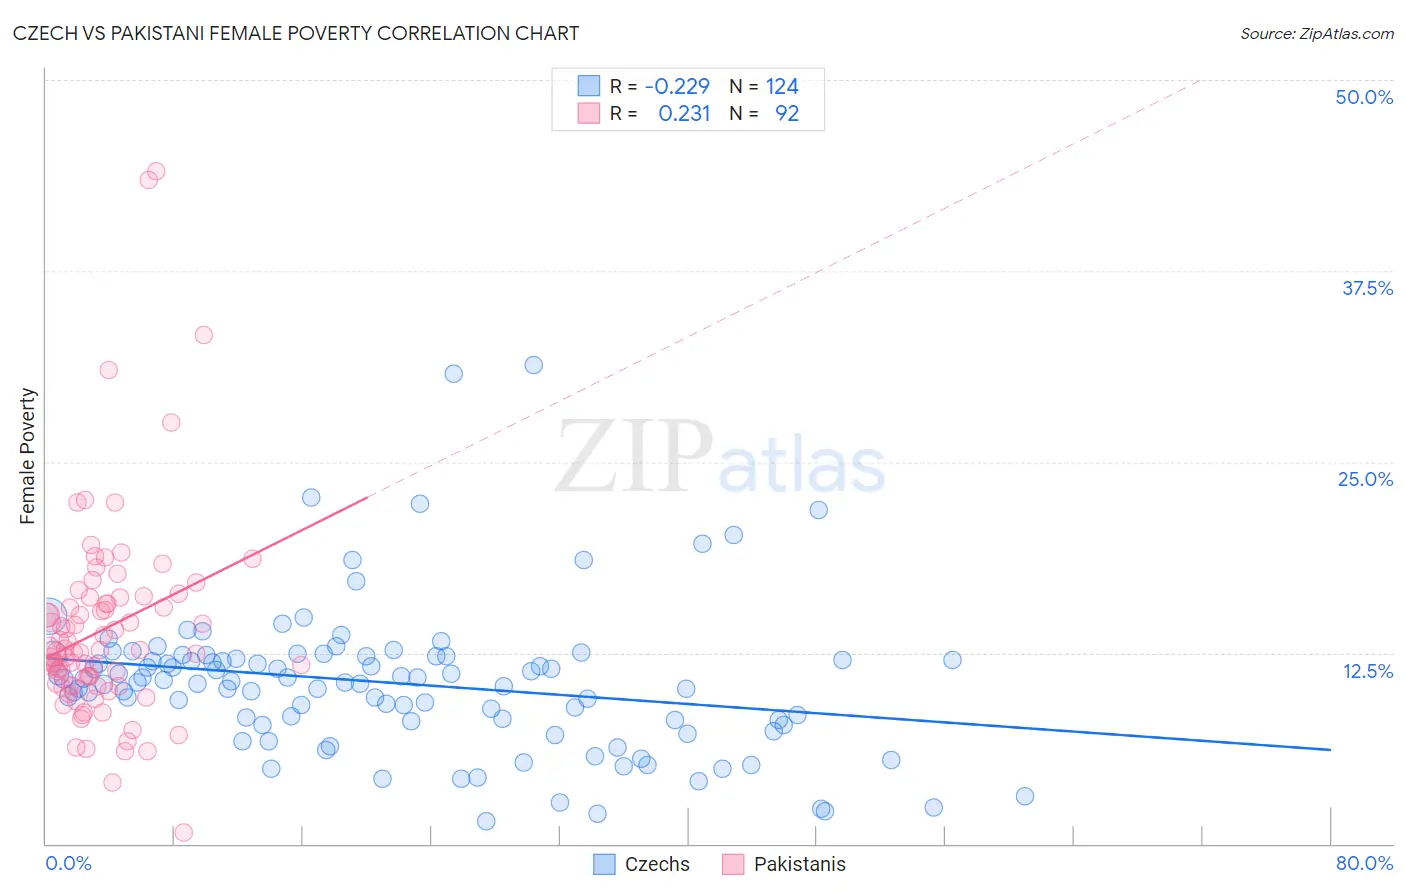 Czech vs Pakistani Female Poverty